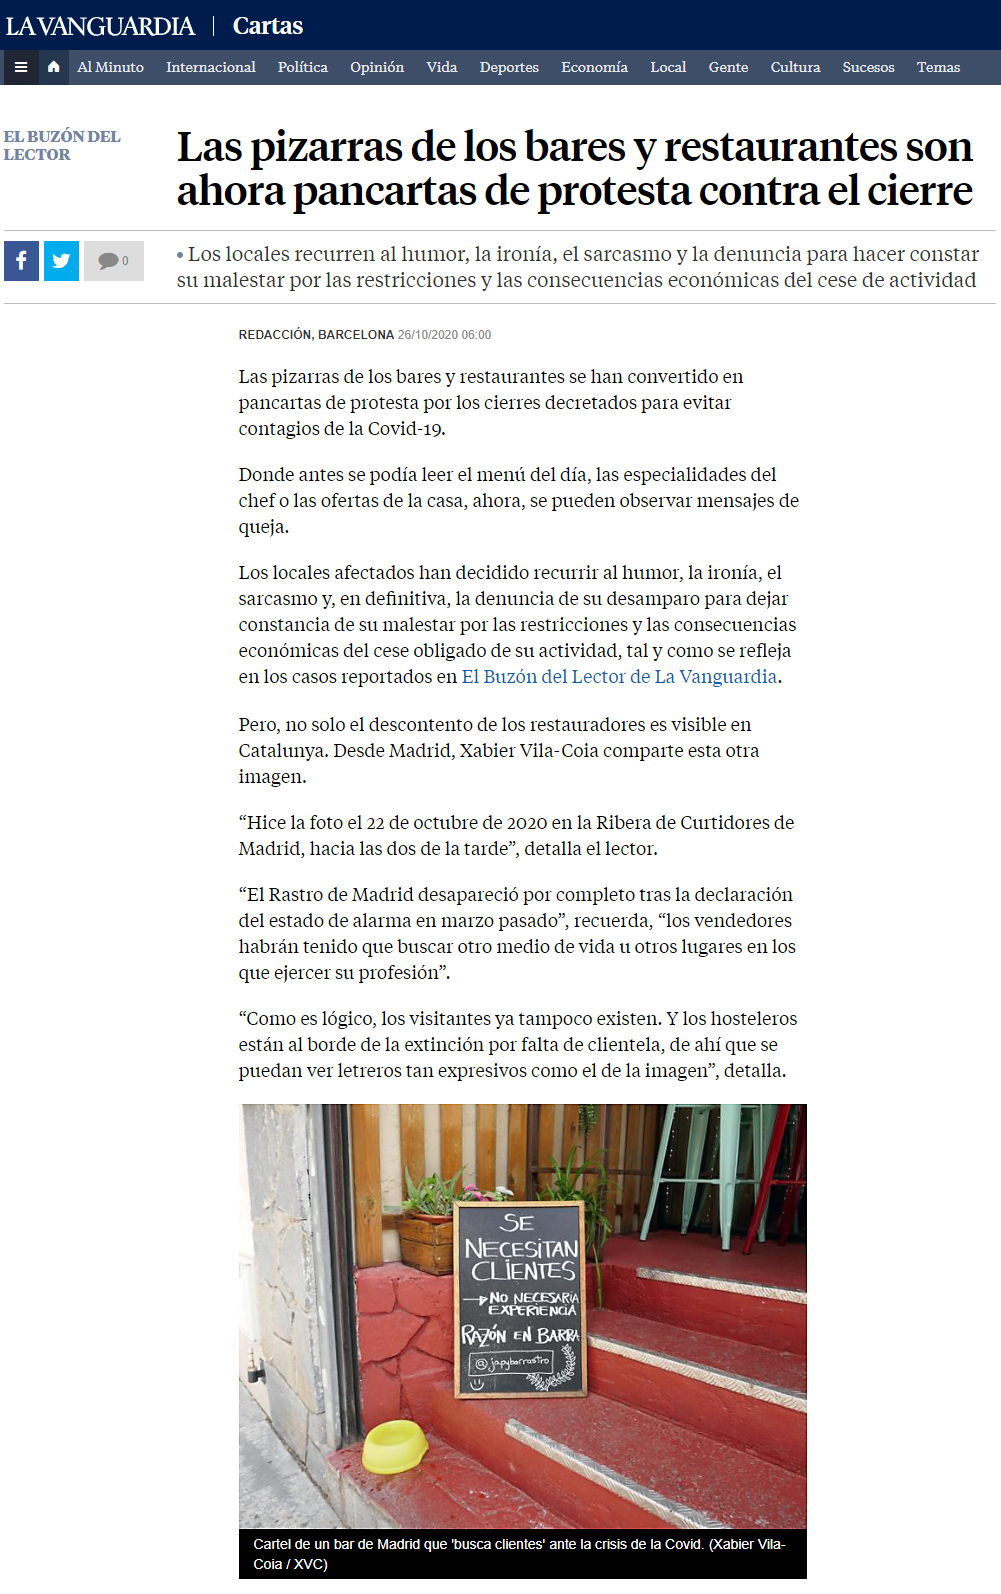 Imagen acompañada de texto, ambos de Xabier Vila-Coia, publicados en la edición digital del diario La Vanguardia el 26 de octubre de 2020.